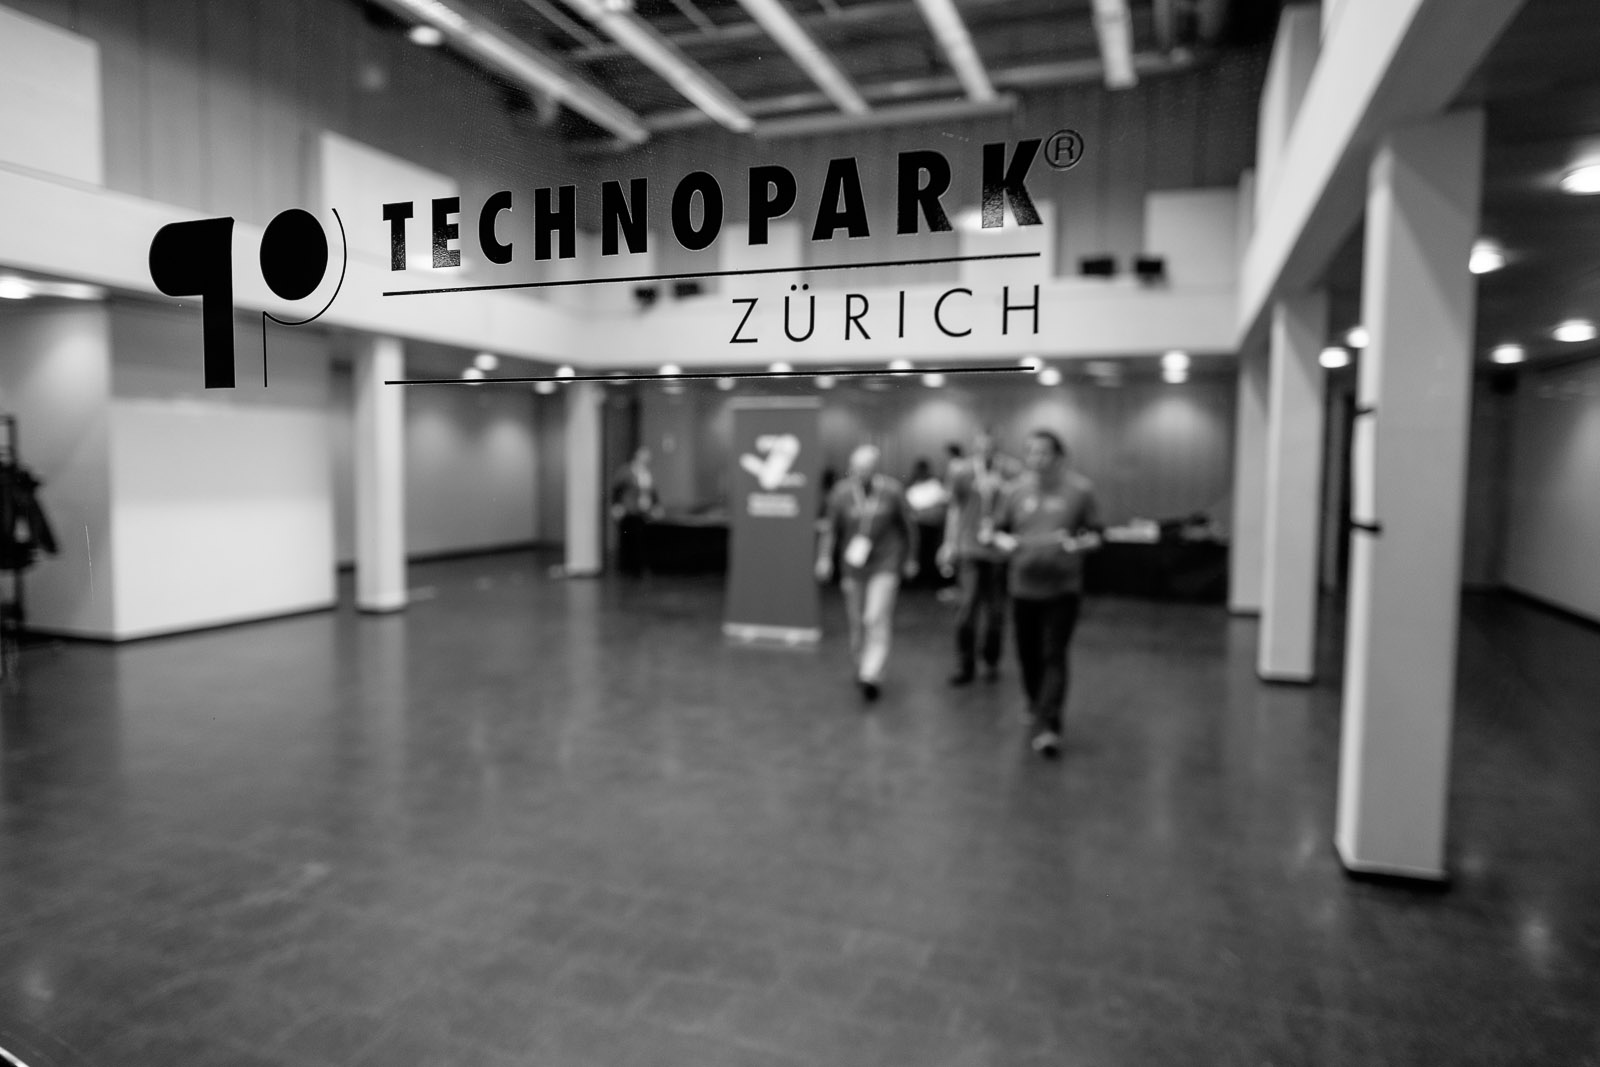 Technopark Zürich was the location for WordCamp Switzerland in 2014.